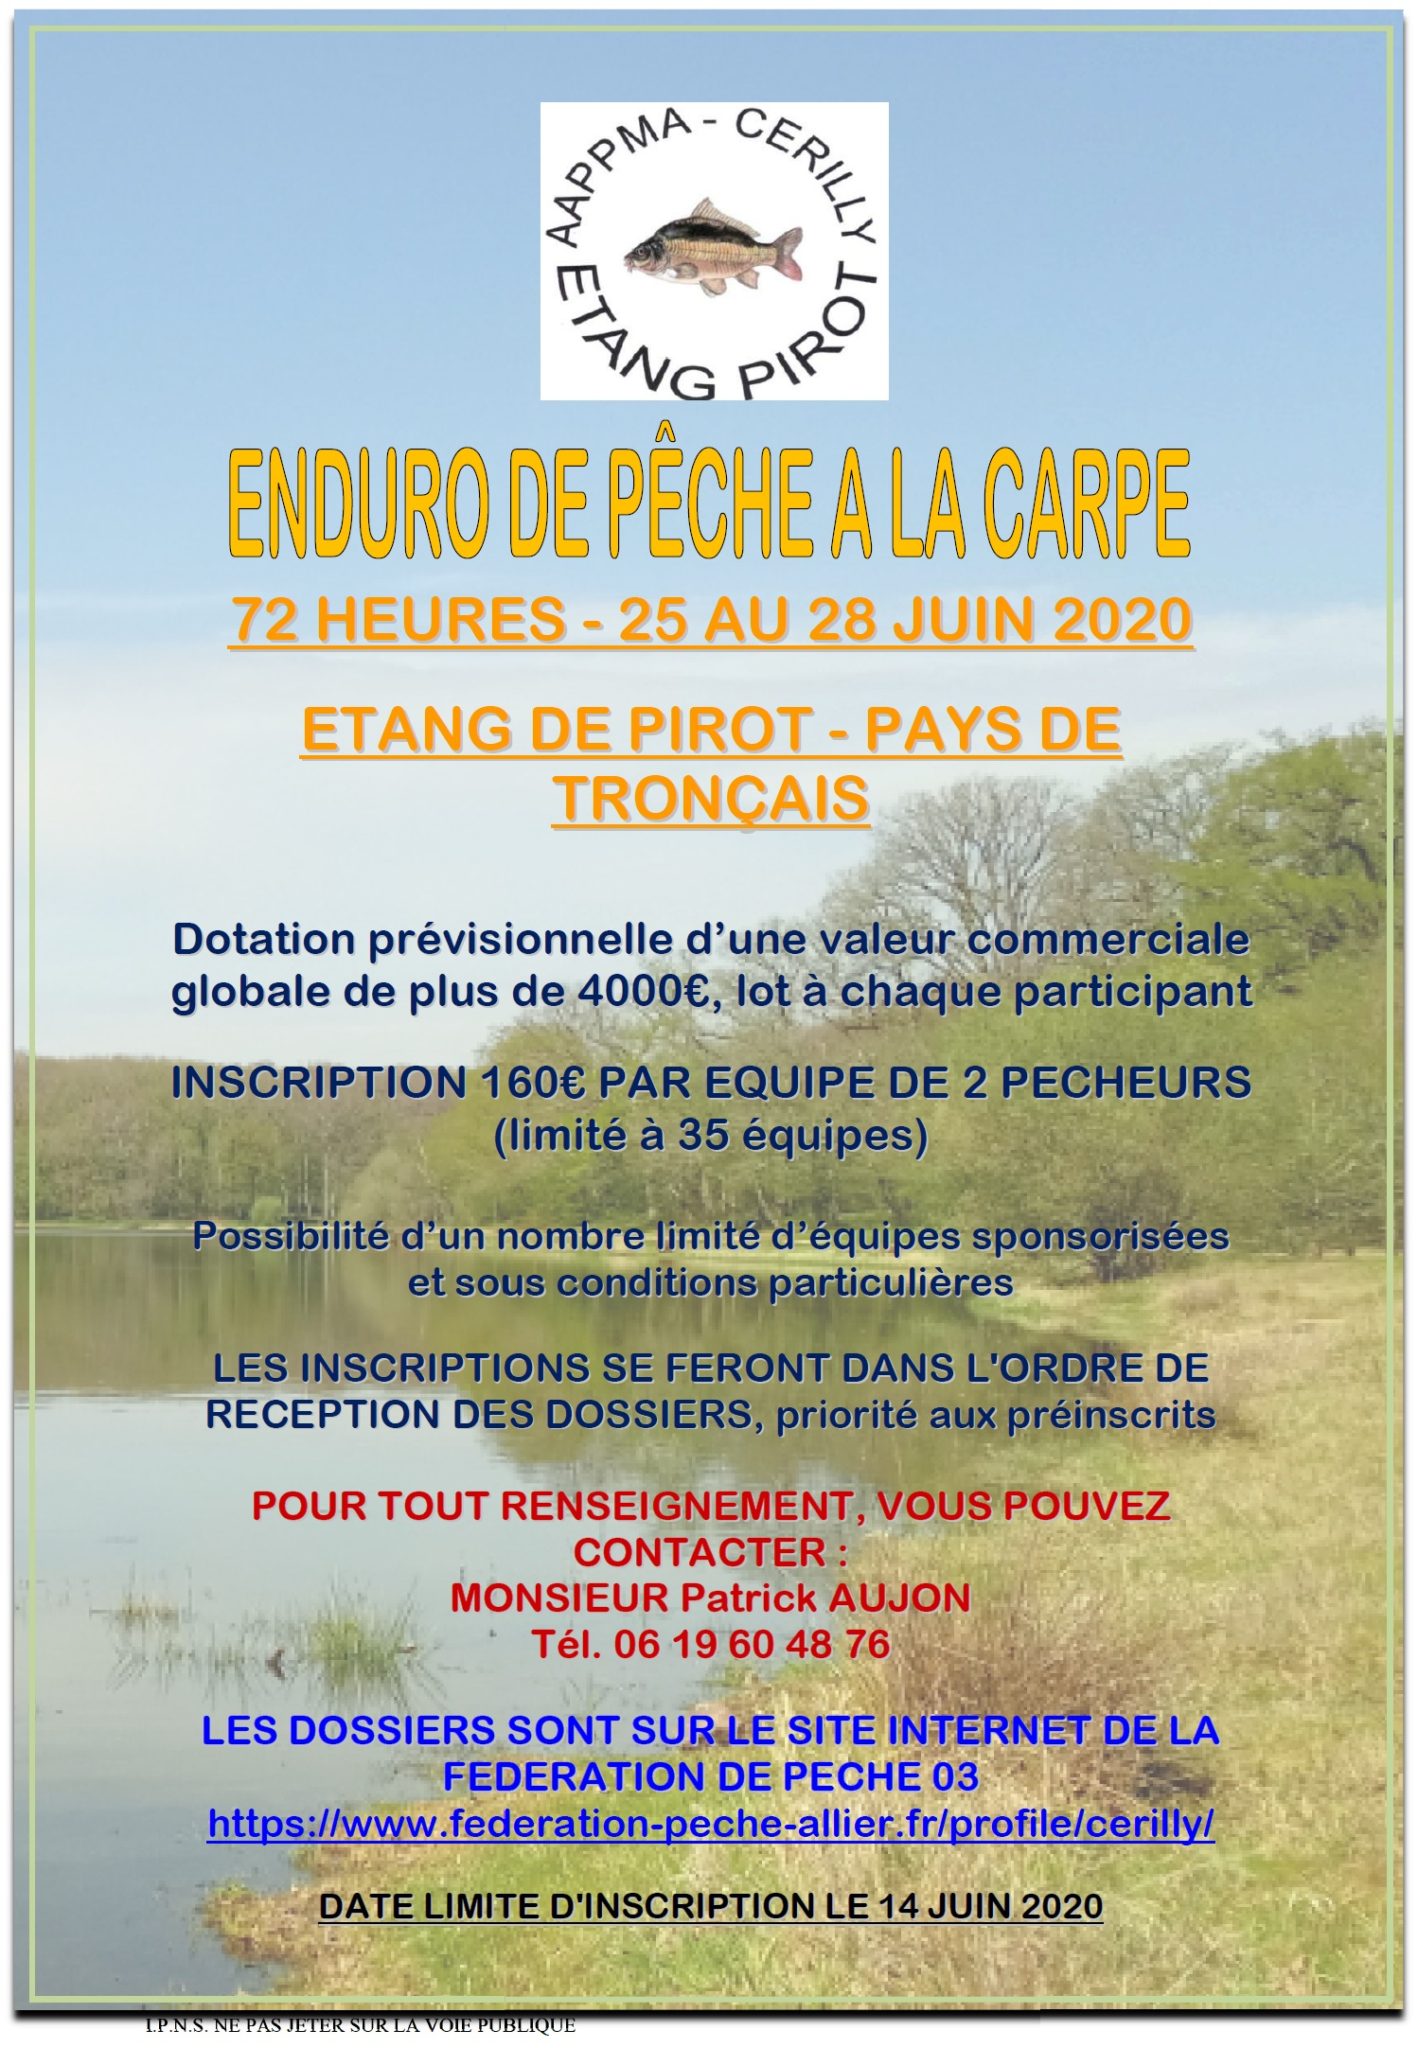 Enduro pêche carpe nuit Pirot juin 2020